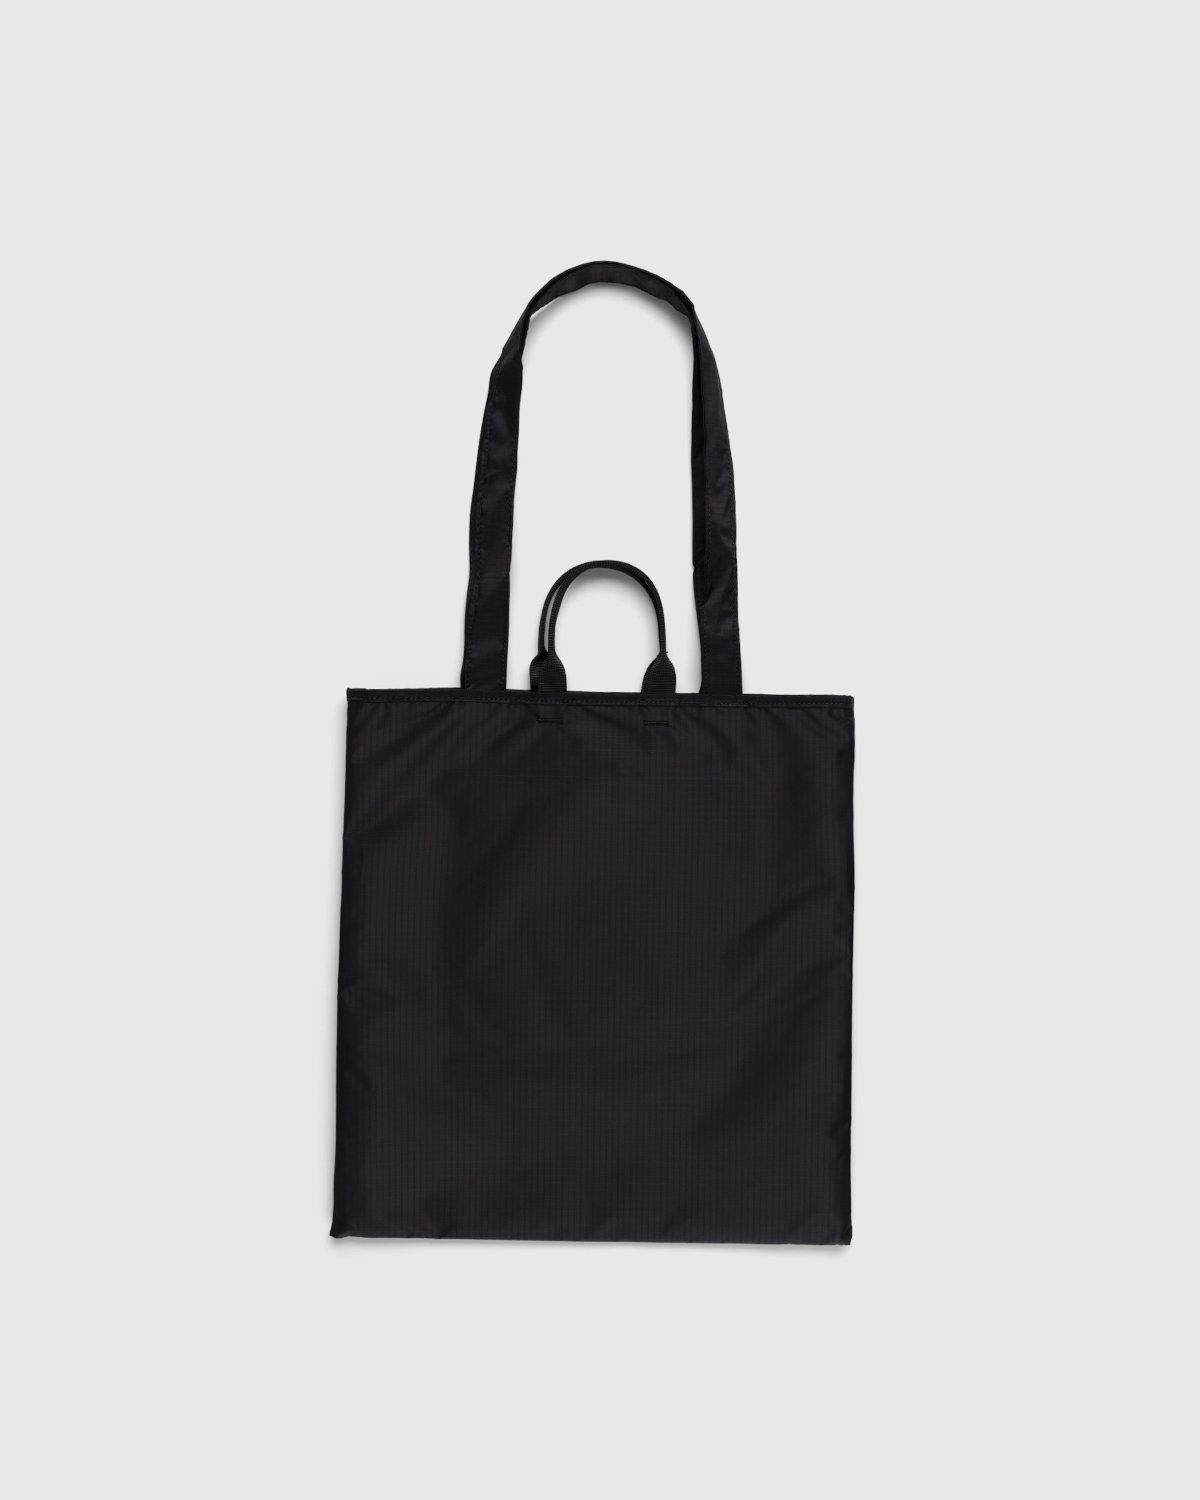 Acne Studios – Shoulder Tote Bag Black - Tote Bags - Black - Image 2